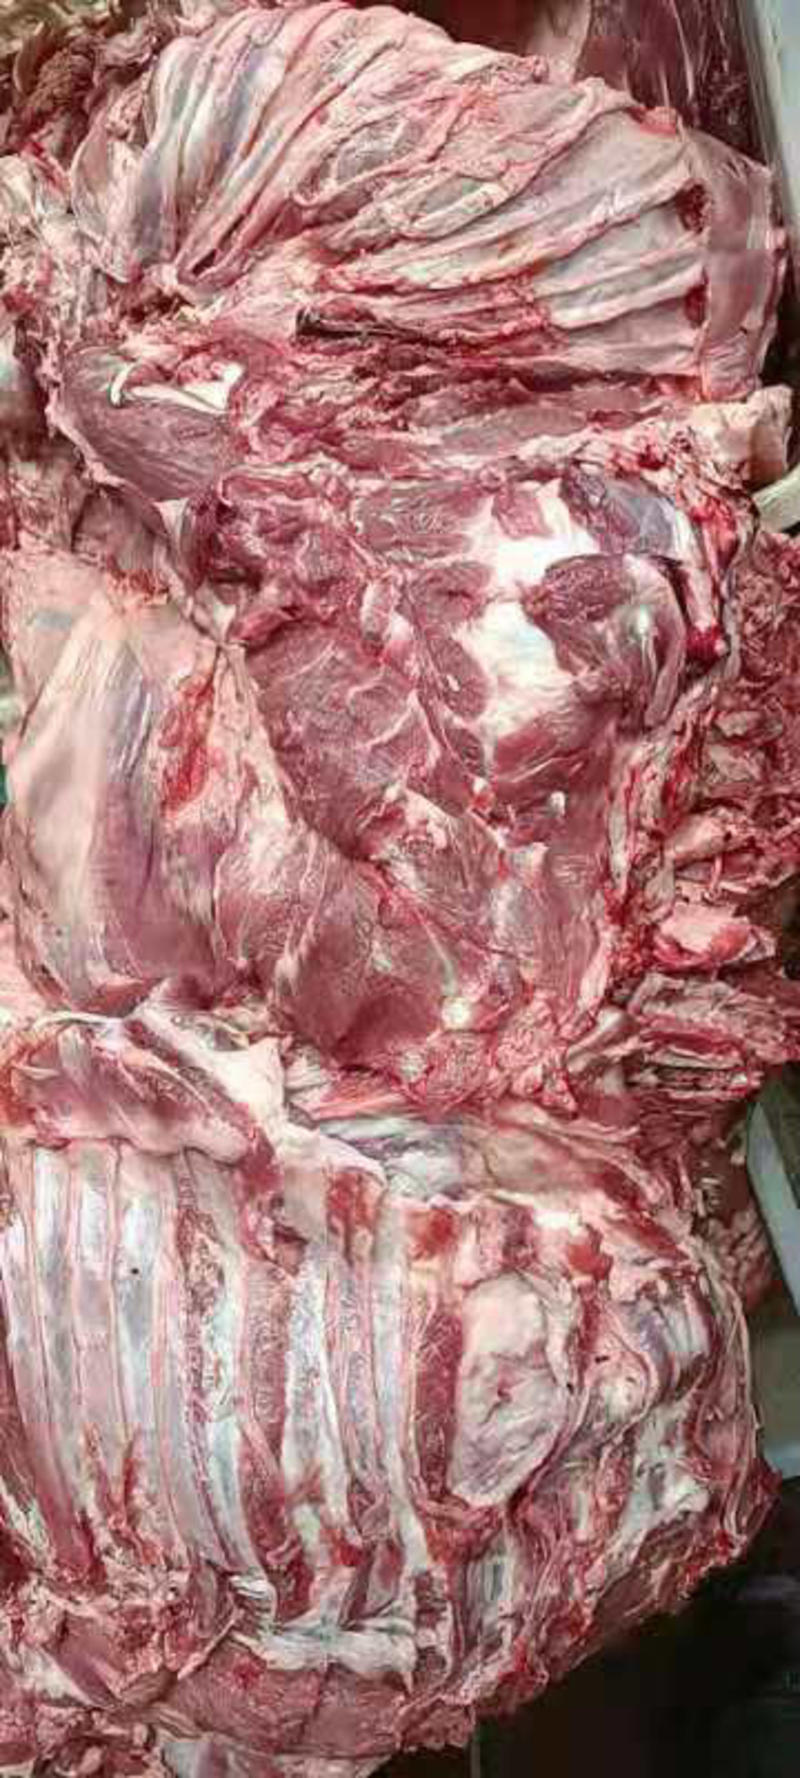 全羊板肉、大量批发厂家直销支持全国发货